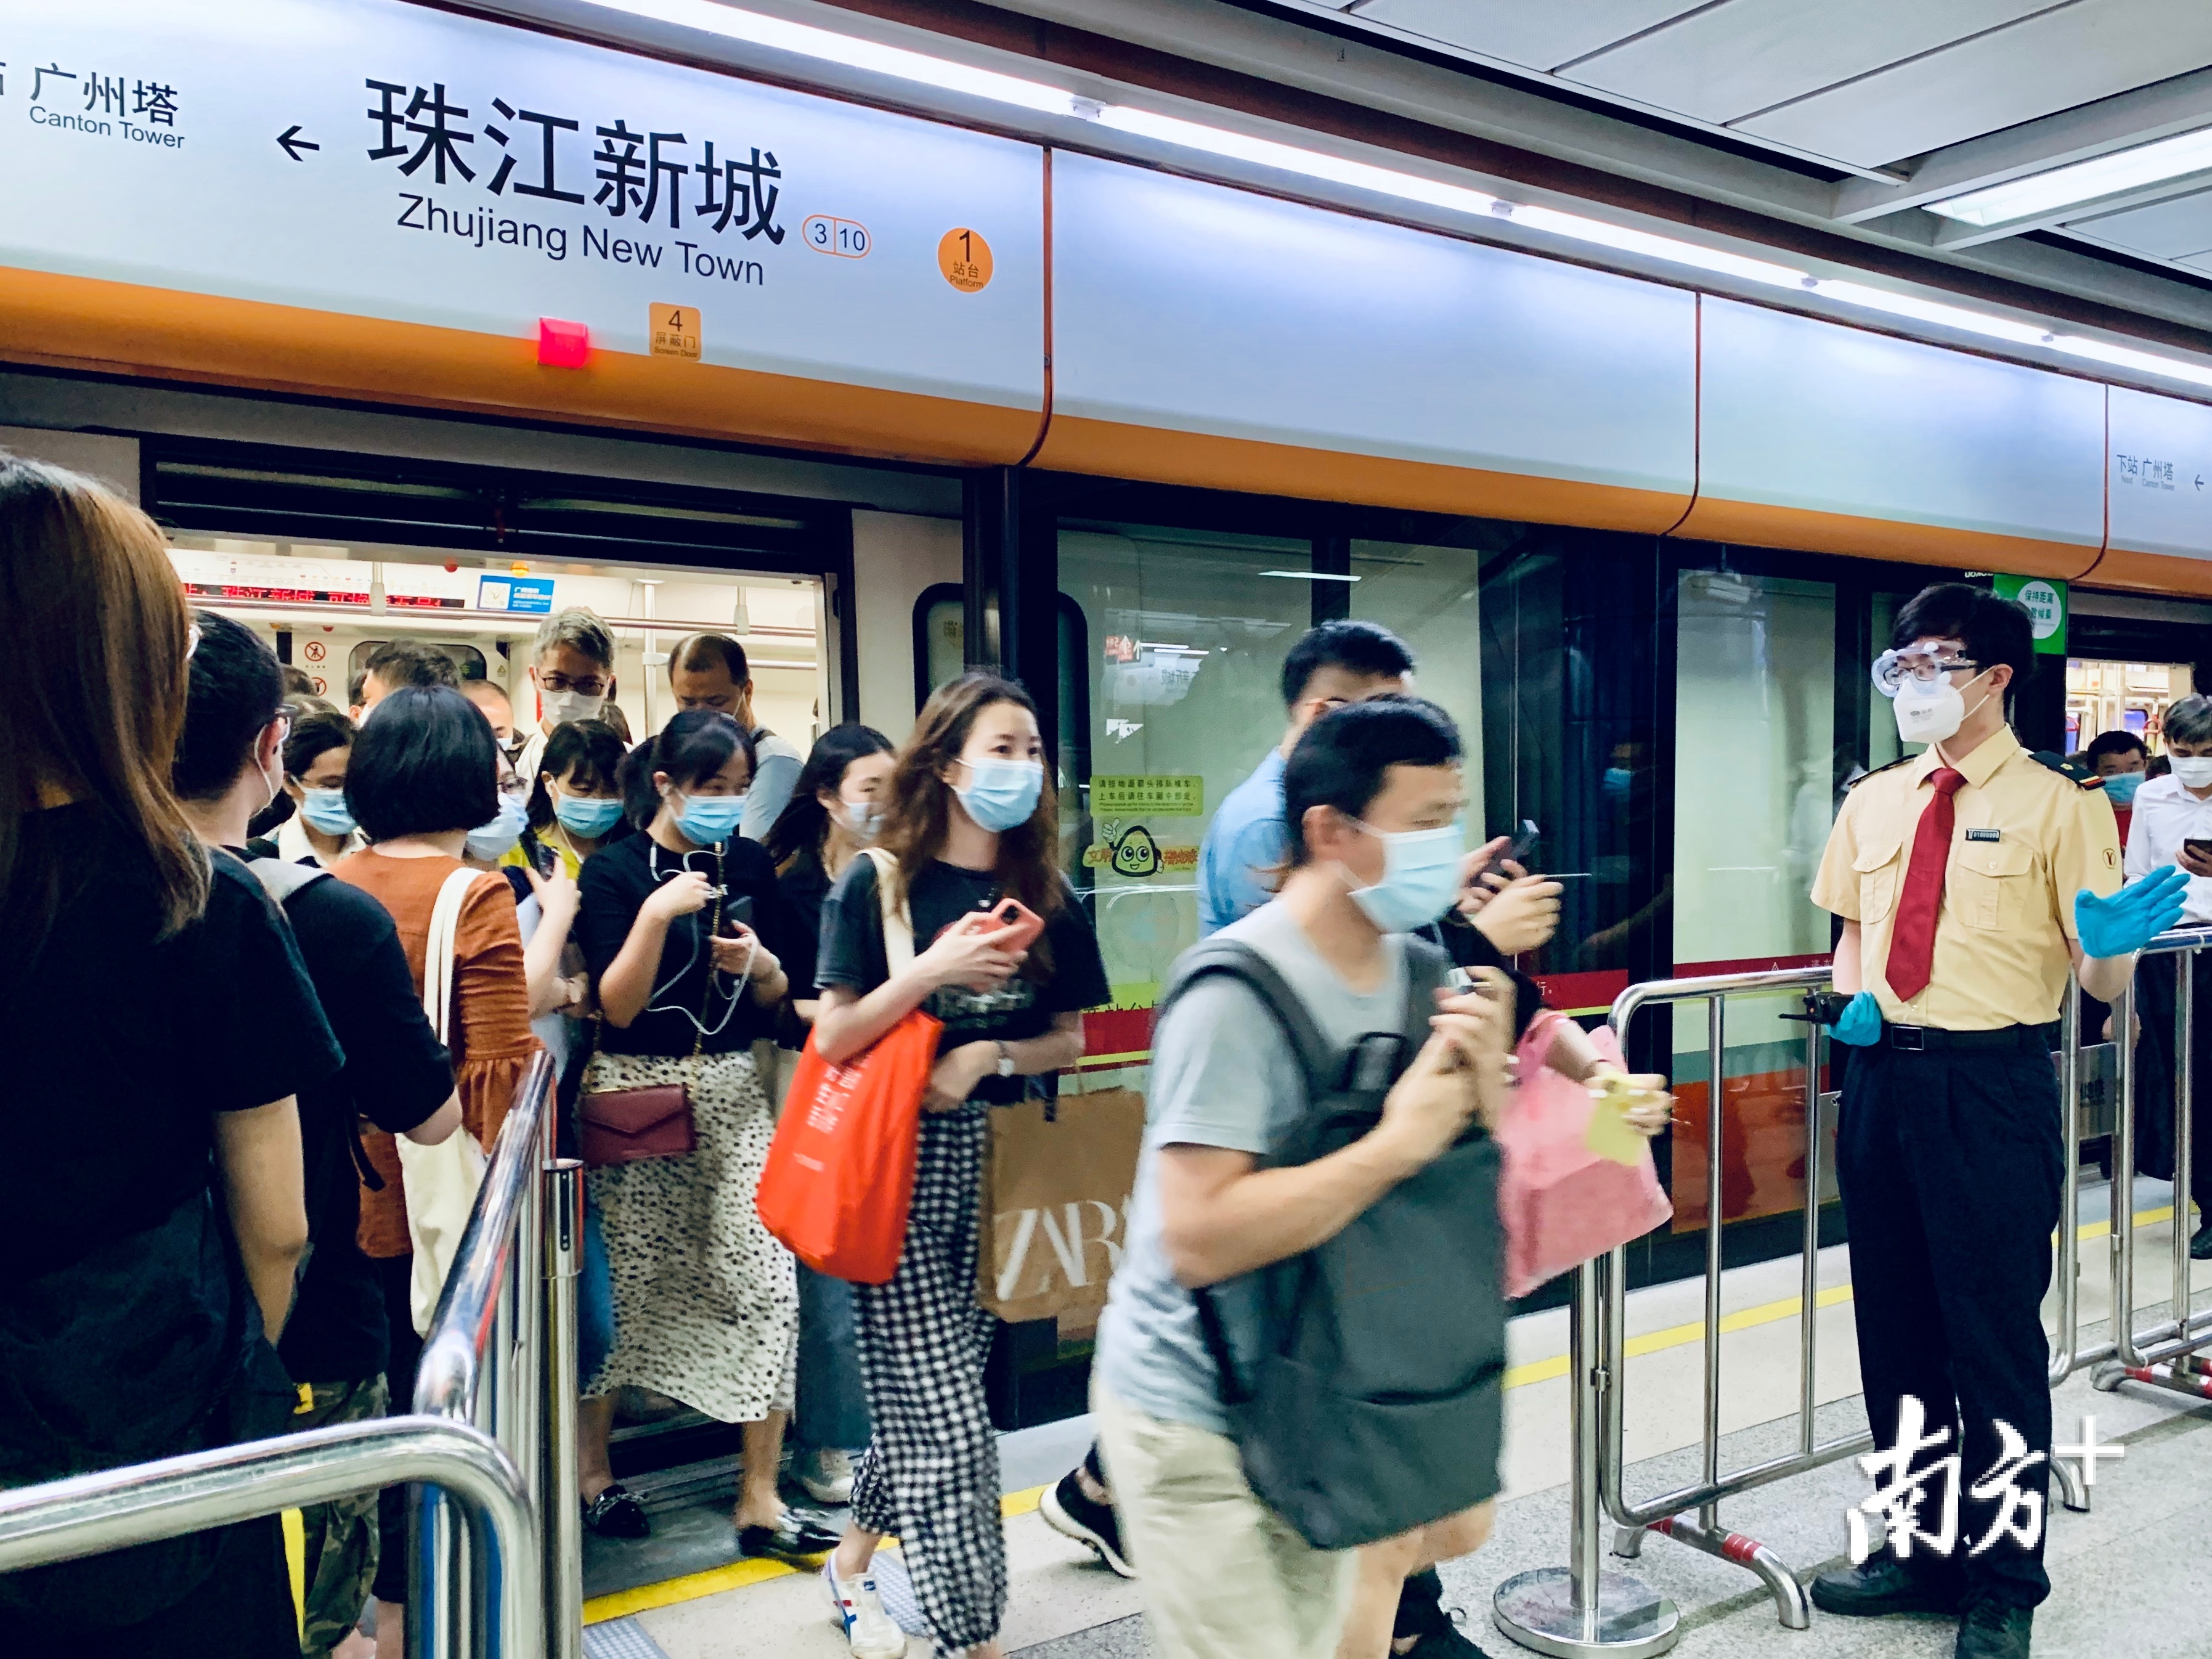 双节临近,广州地铁这5天延迟1小时收车